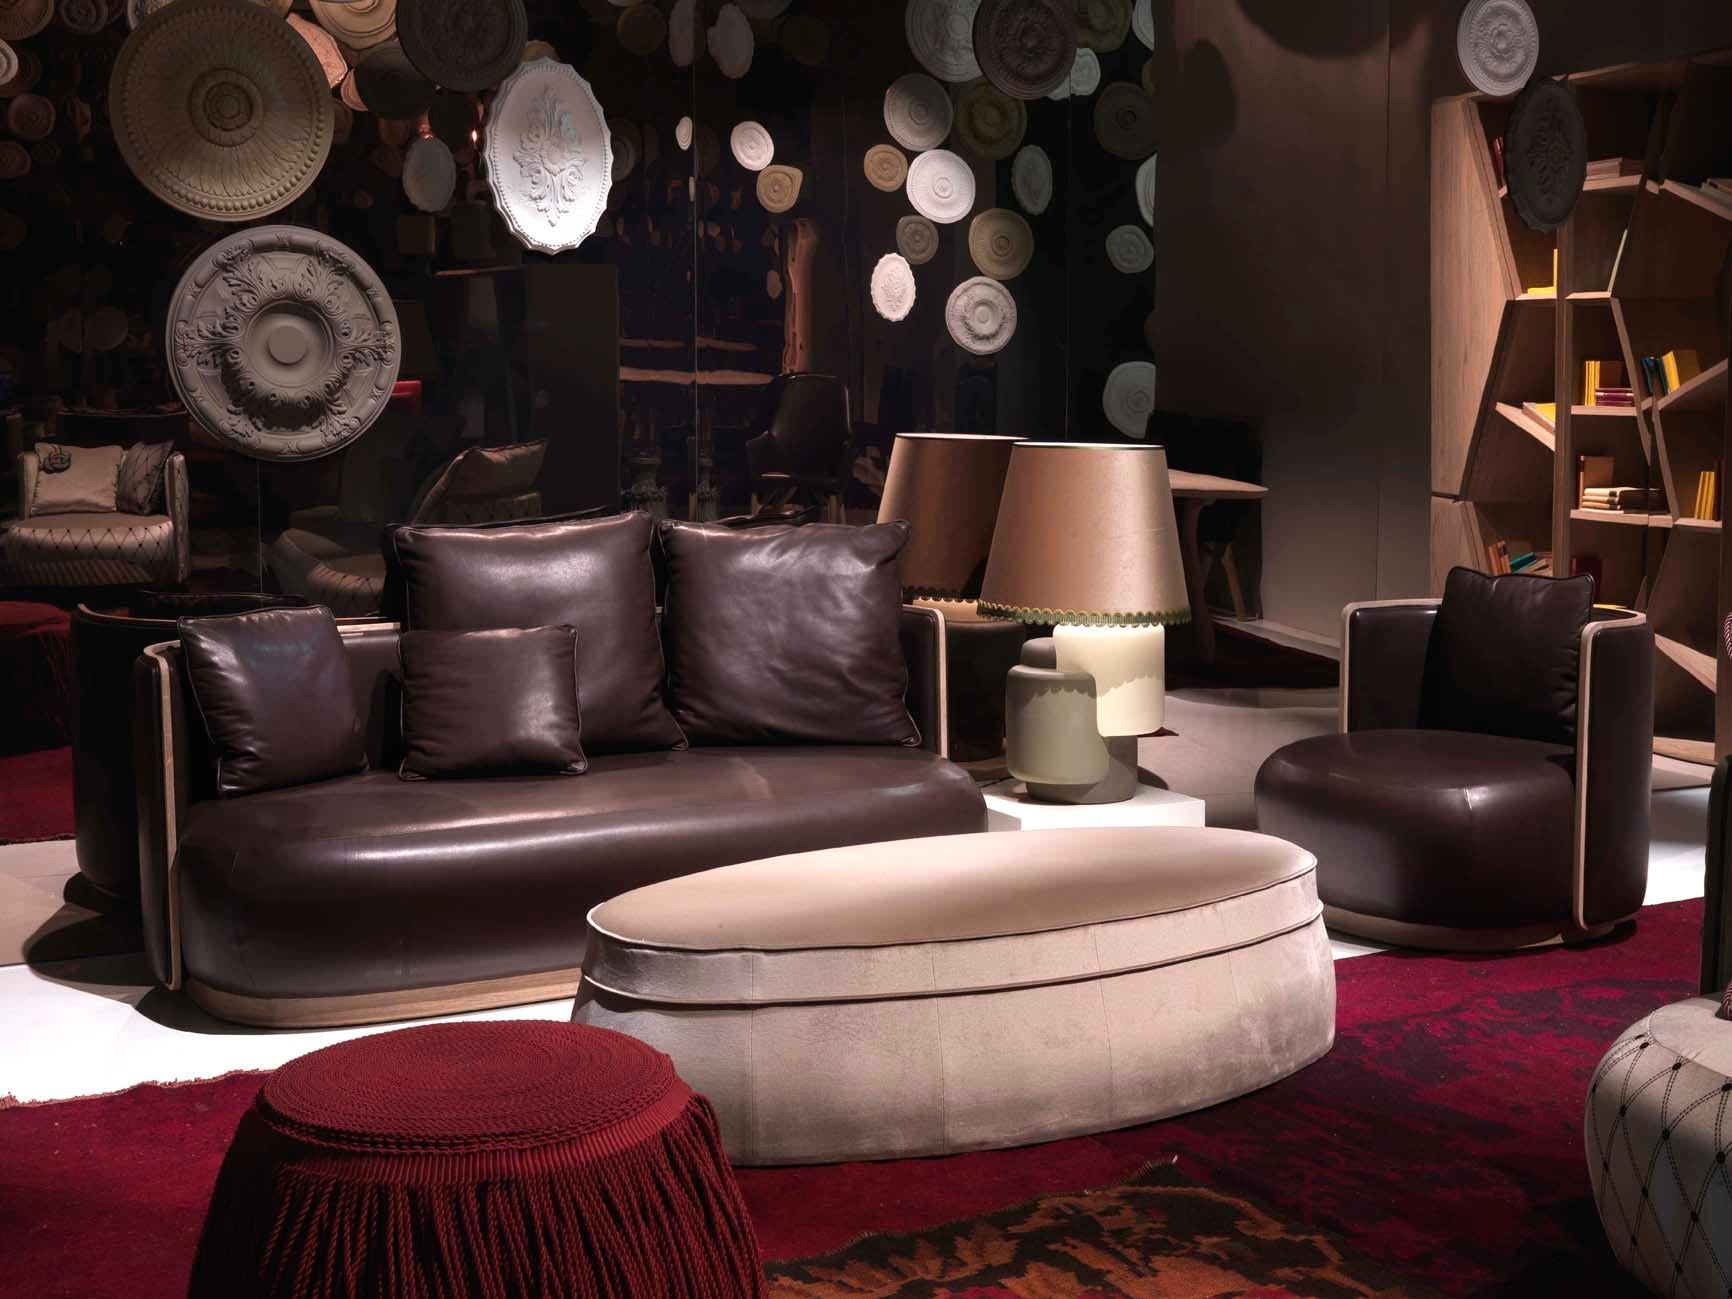 Le canapé Kir Royal est un mélange harmonieux d'élégance classique et de sophistication moderne, méticuleusement conçu par Christophe de la Fontaine et fabriqué à la main en Italie. Ce canapé présente une réinterprétation contemporaine des meubles